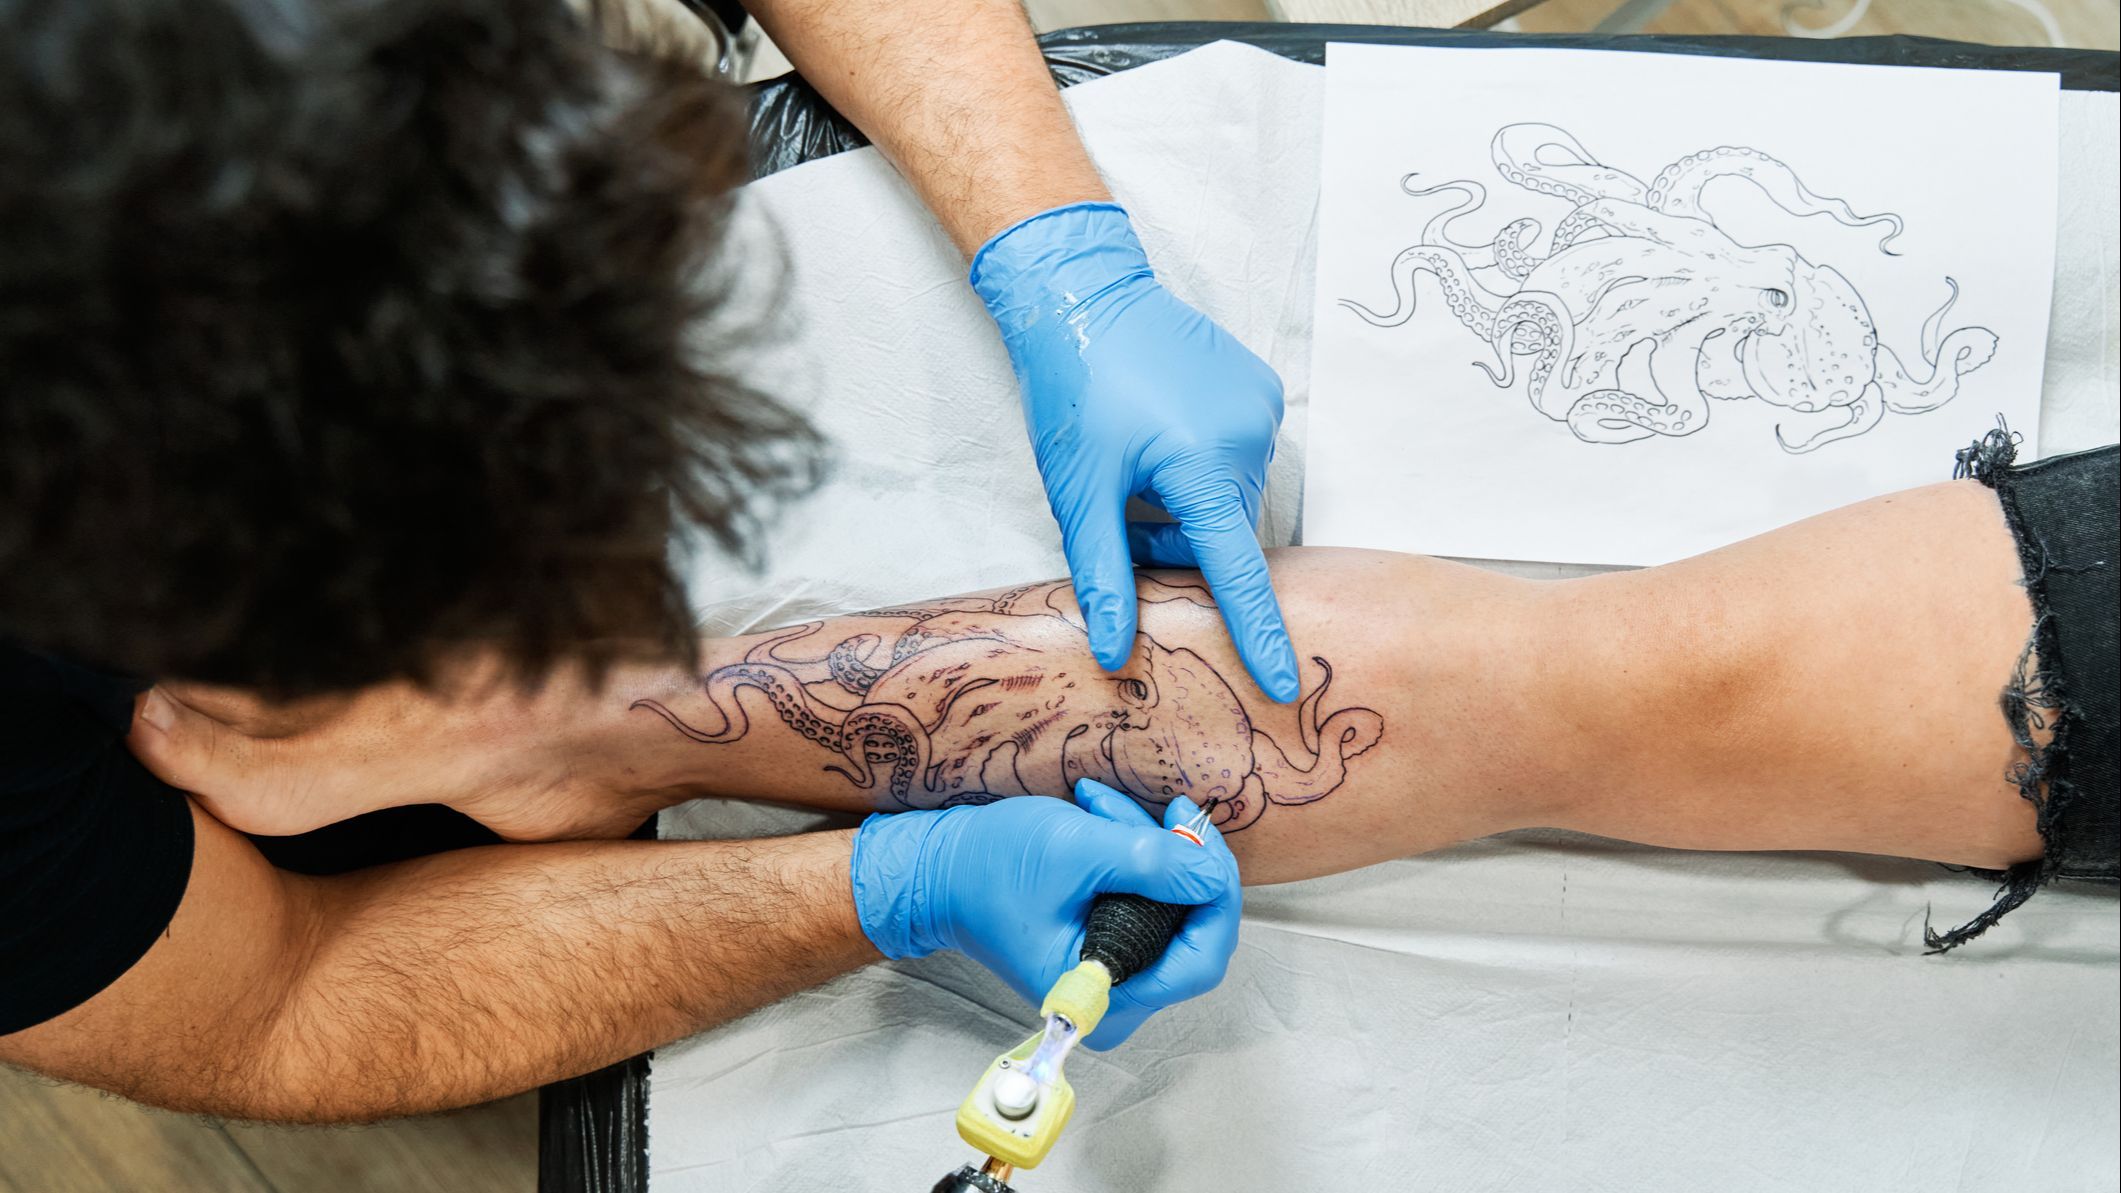 La advertencia de un médico: "Los tatuajes afectan a nuestra salud y longevidad negativamente"